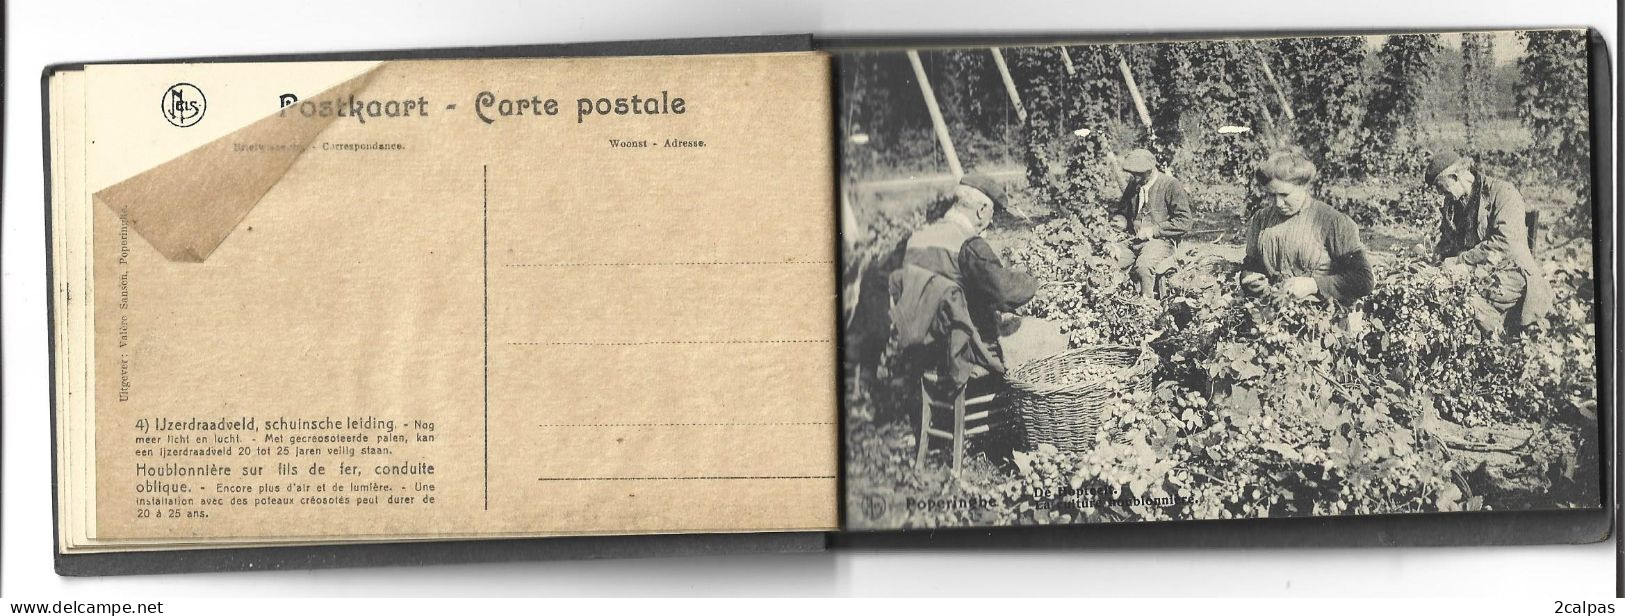 poperinghe (Poperinge) - Belgique - rare carnet complet 12 cartes - La culture du Houblon - Fabrication de la Bière